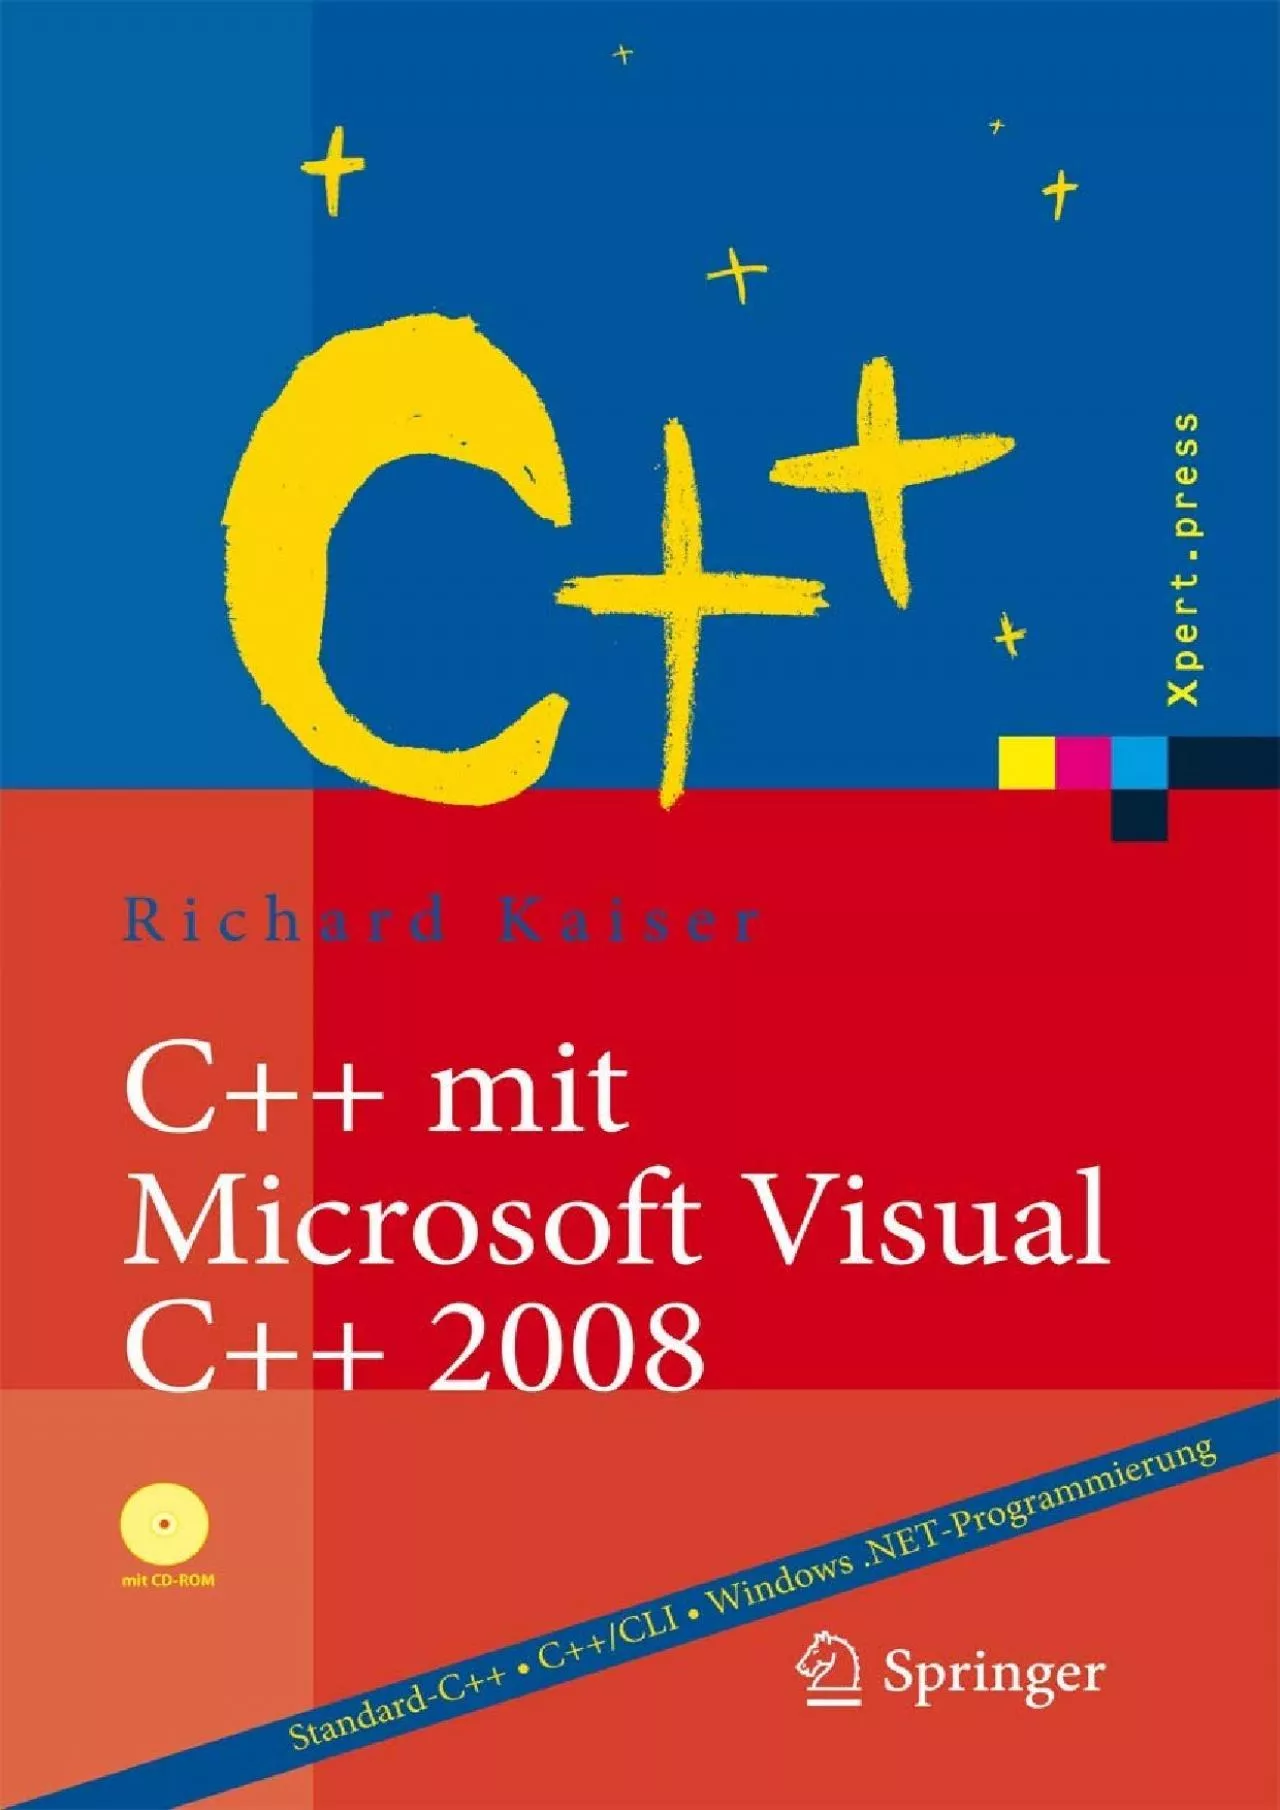 [eBOOK]-C++ mit Microsoft Visual C++ 2008: Einführung in Standard-C++, C++/CLI und die